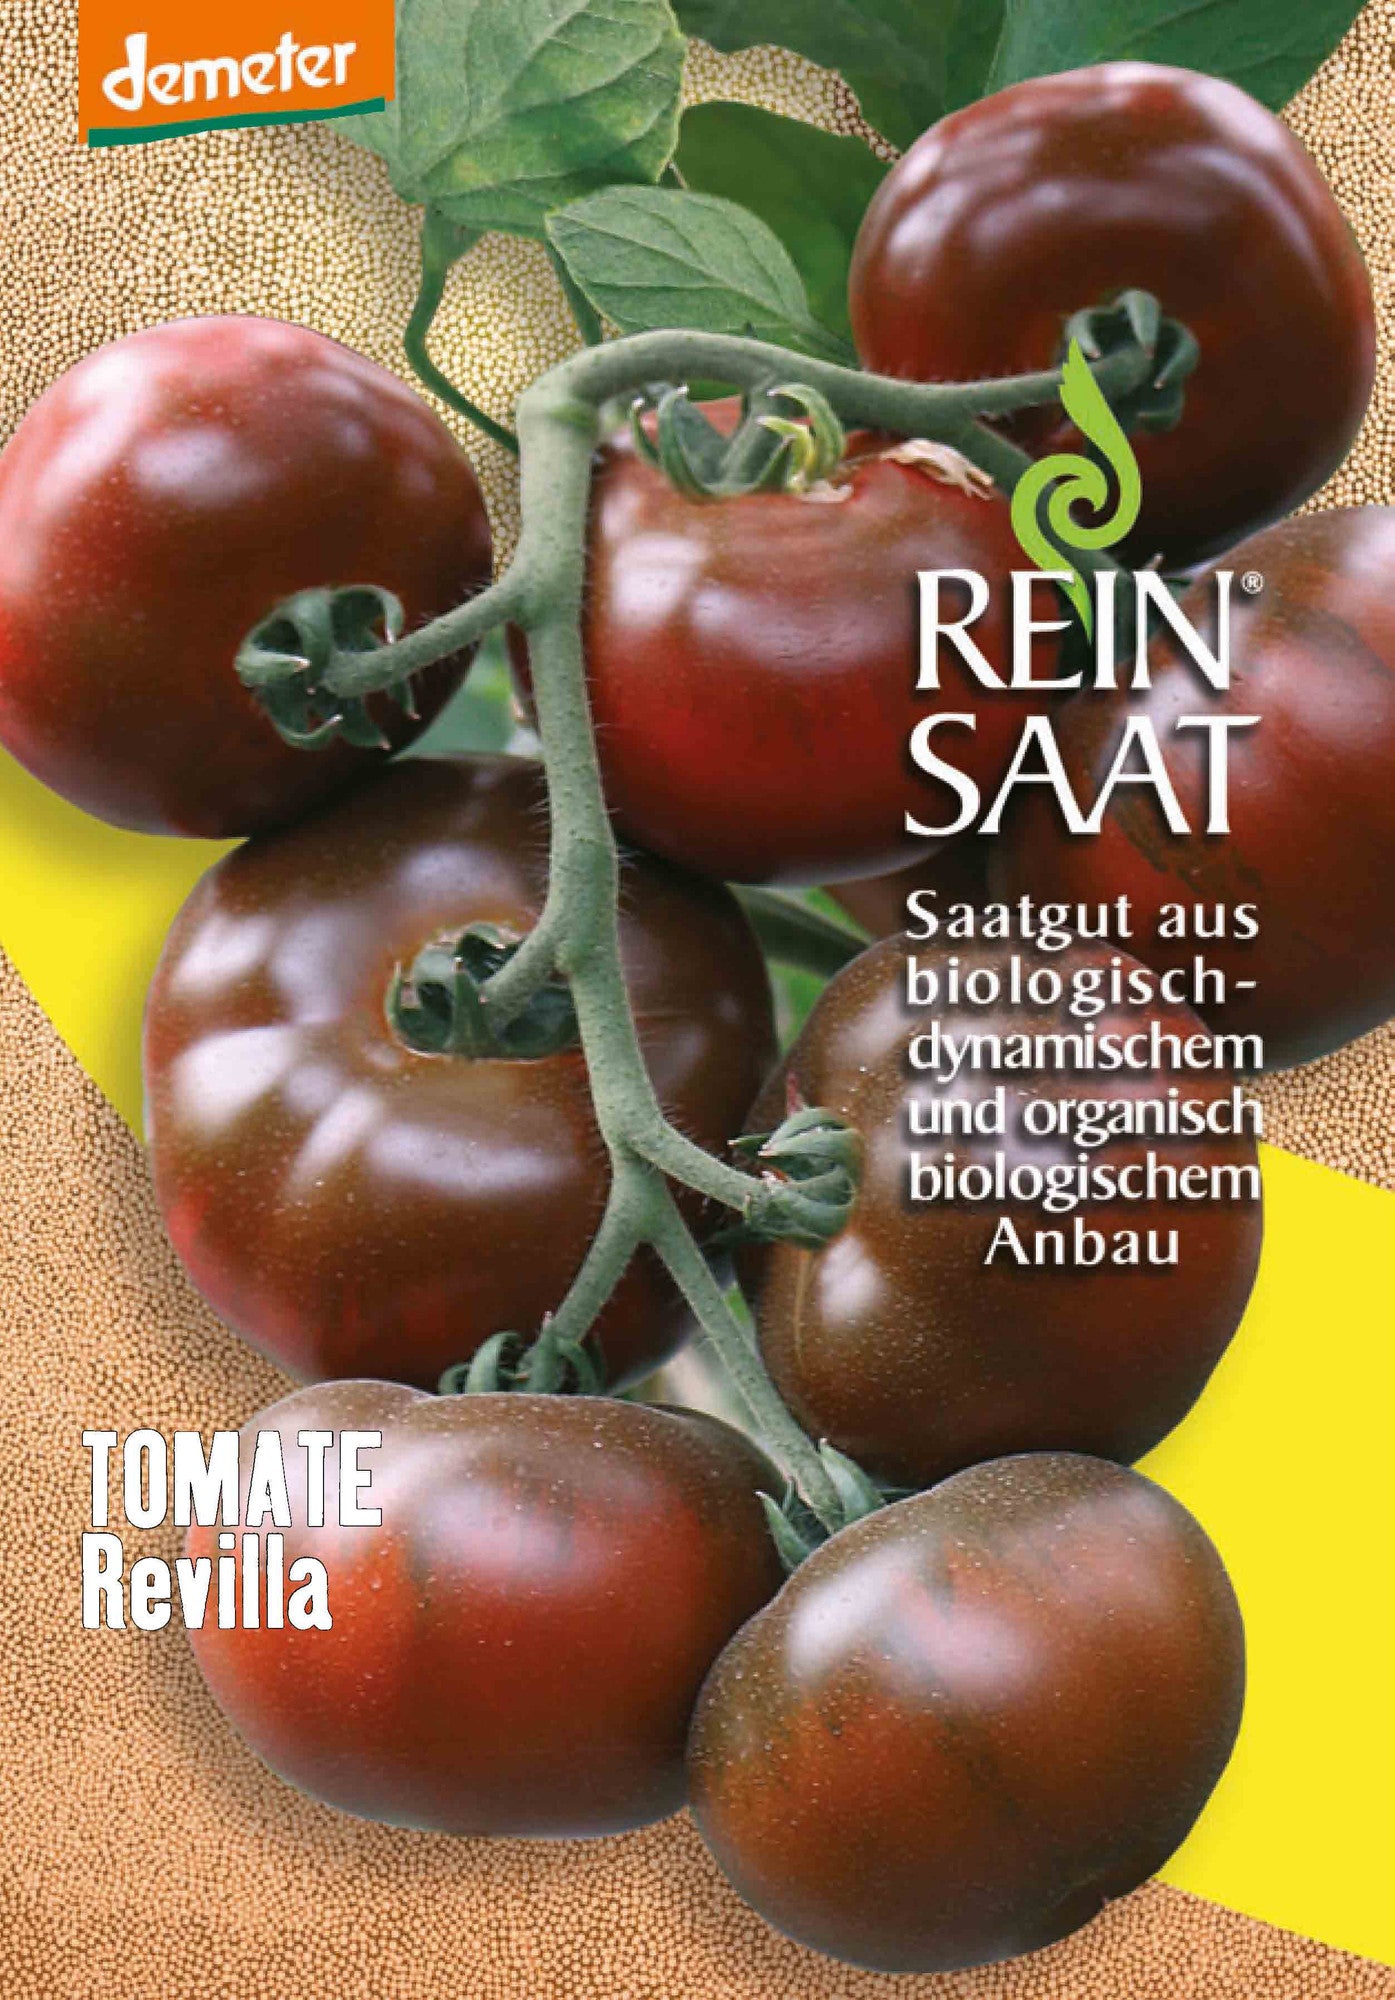 Tomate Revilla | BIO Tomatensamen von Reinsaat